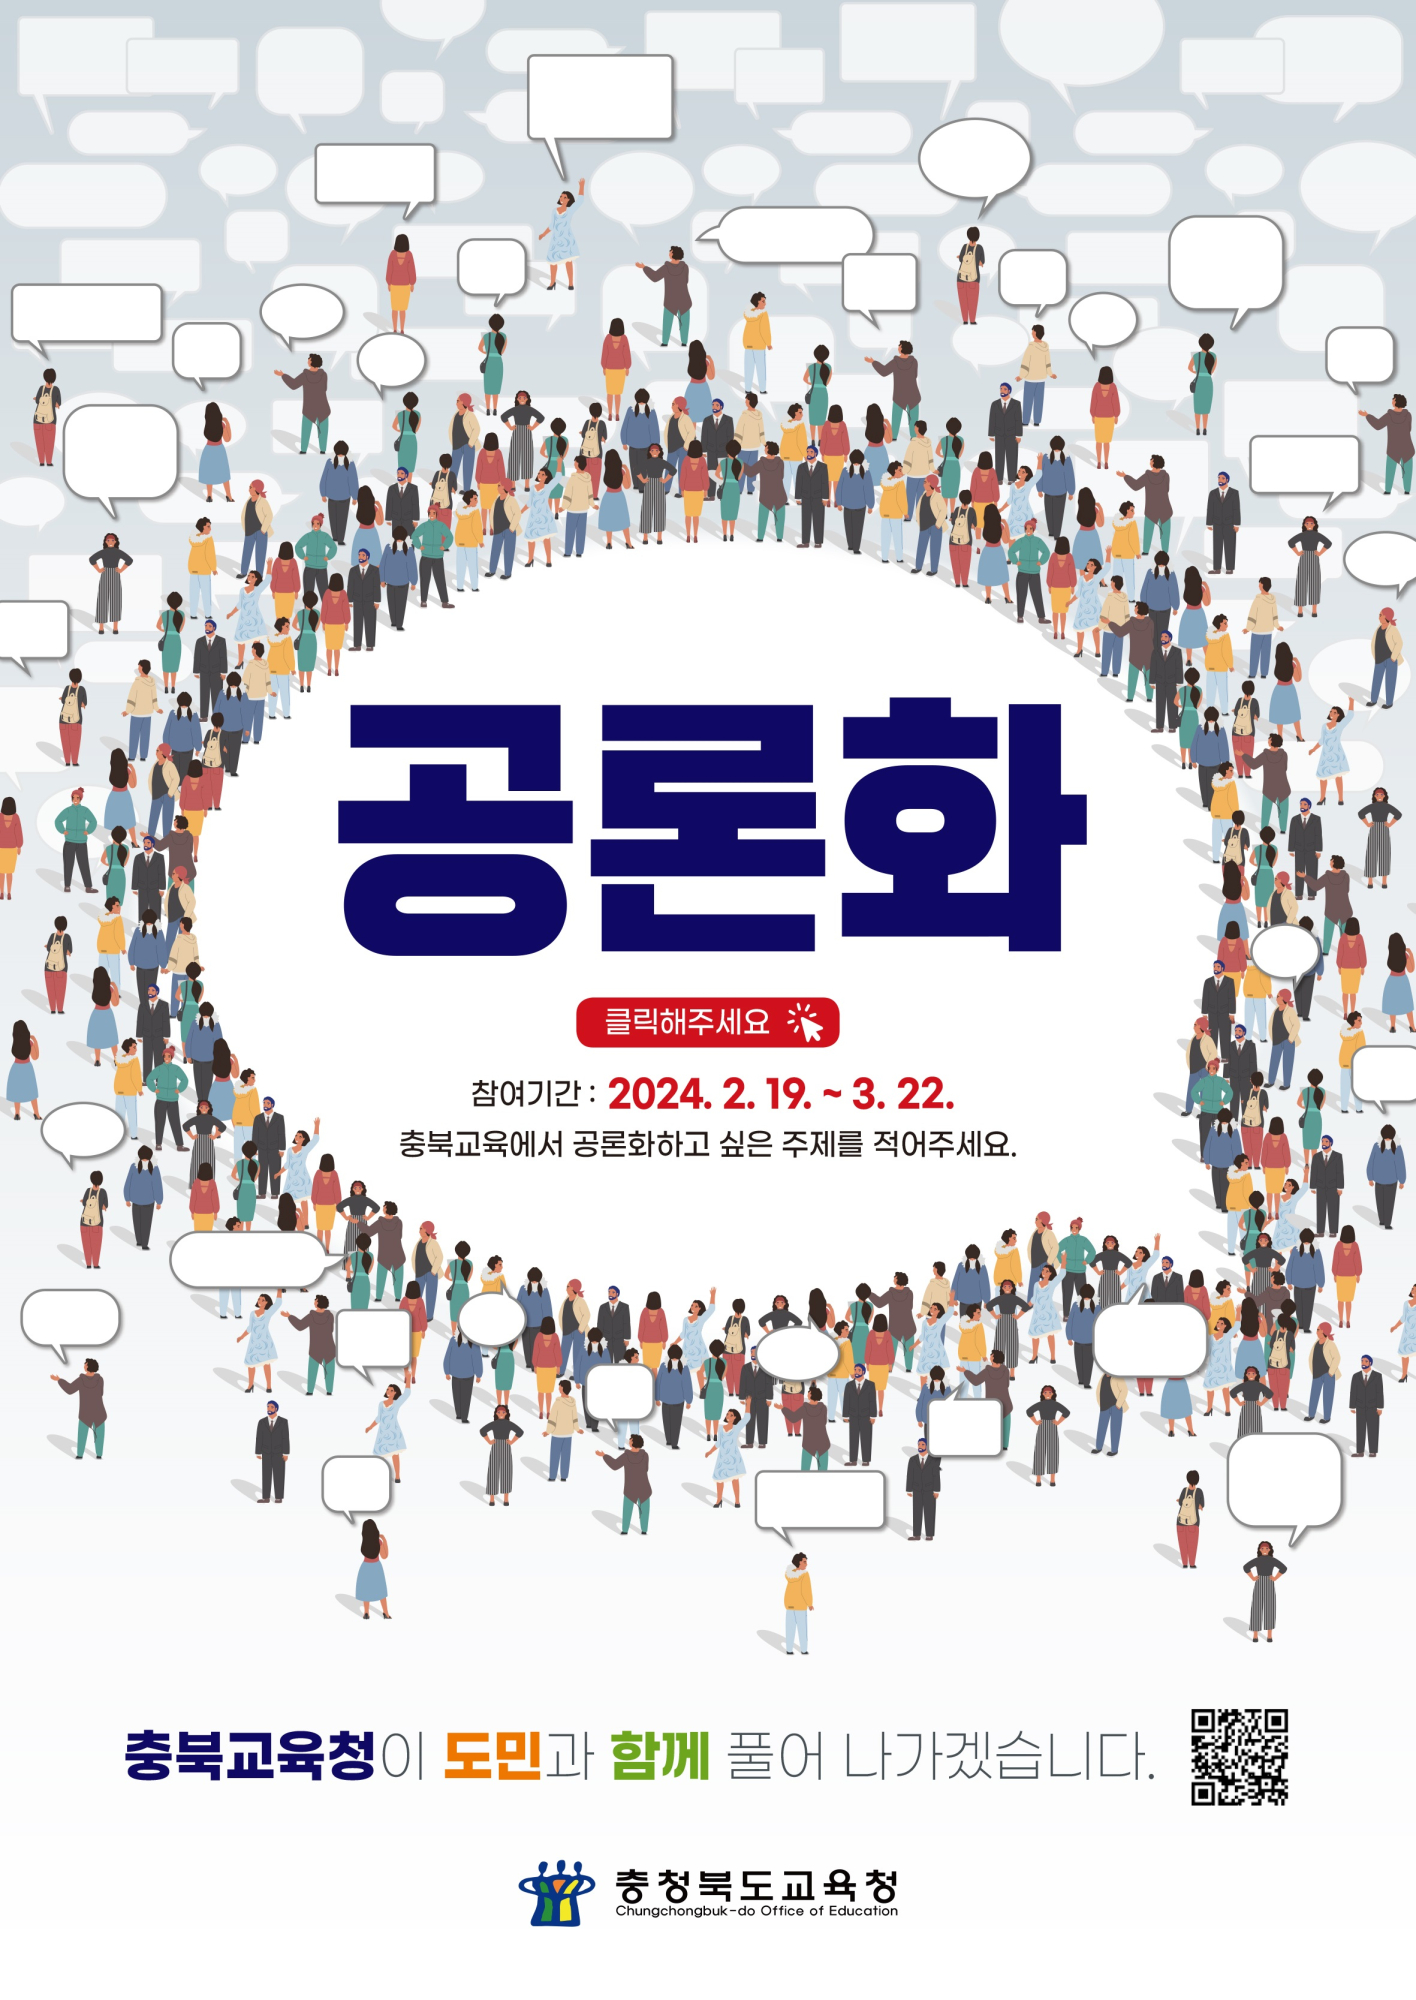 2024. 충북교육 공론화사업 의제 제안 재안내